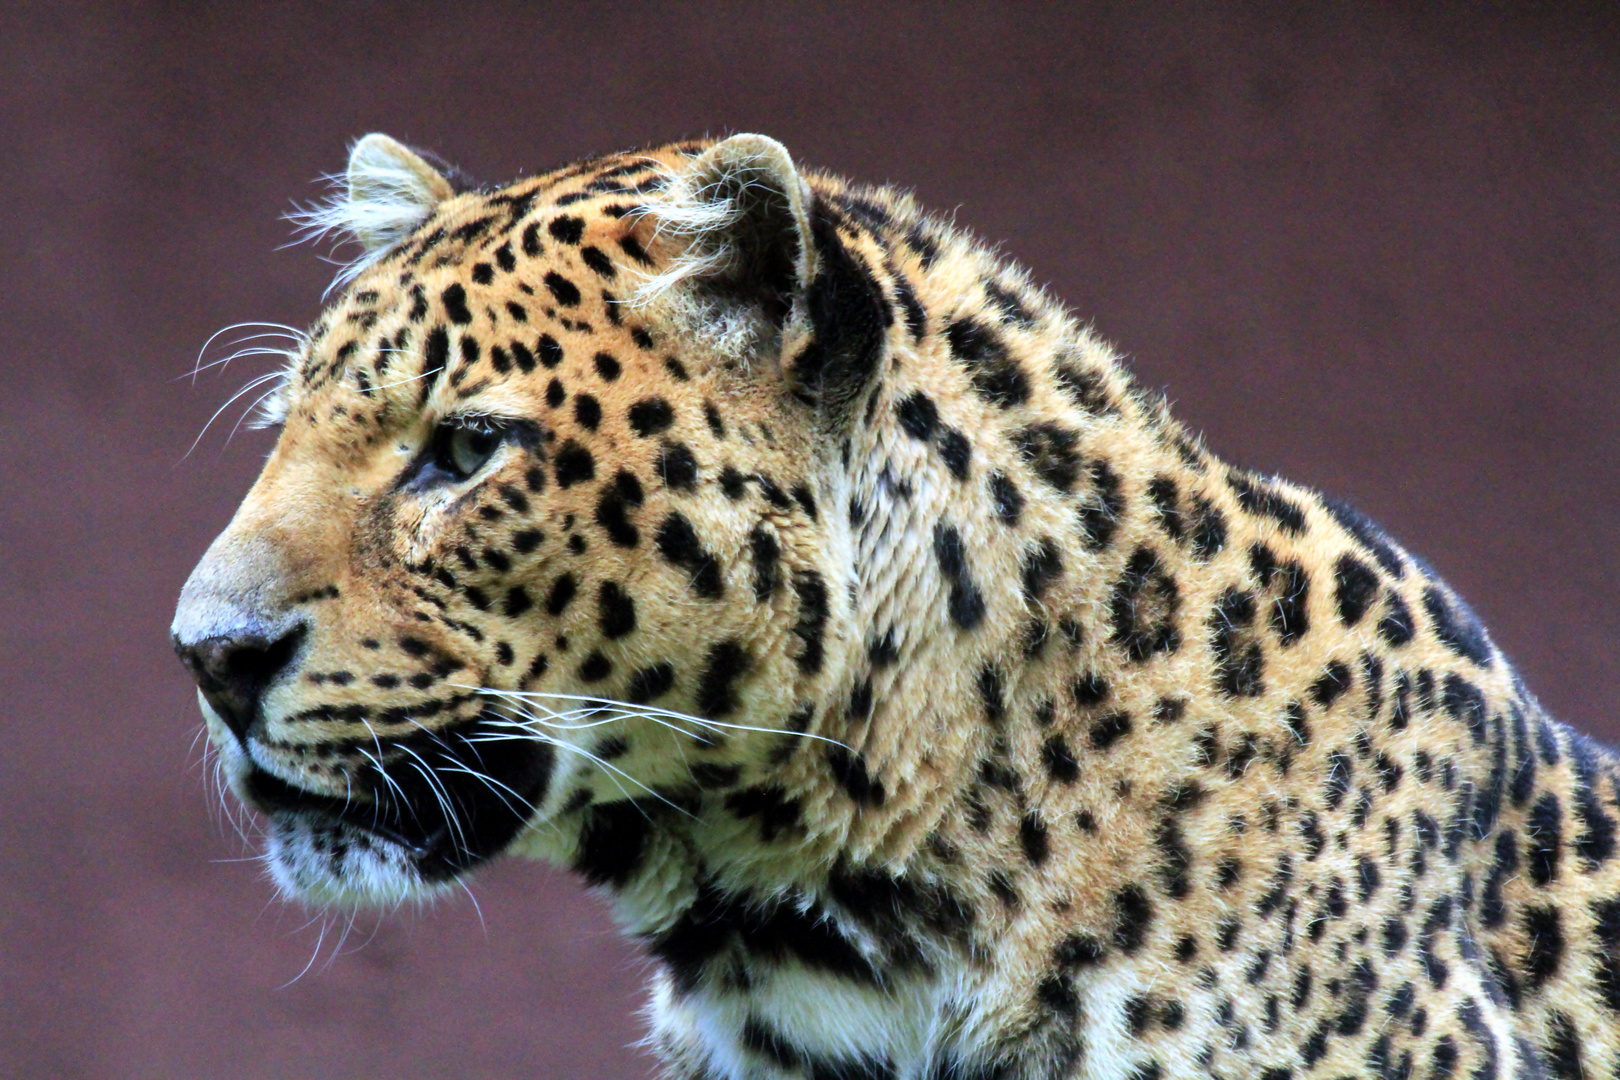 Leoparden Portrait